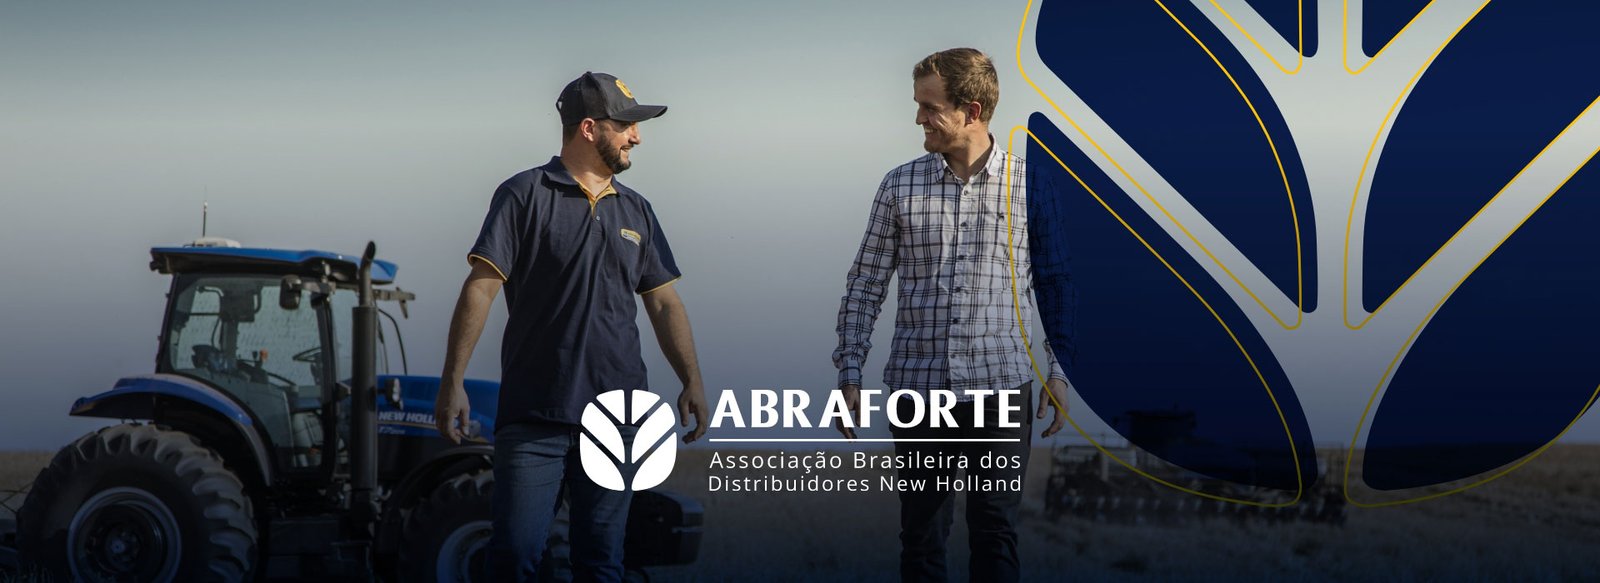 (c) Abraforte.com.br